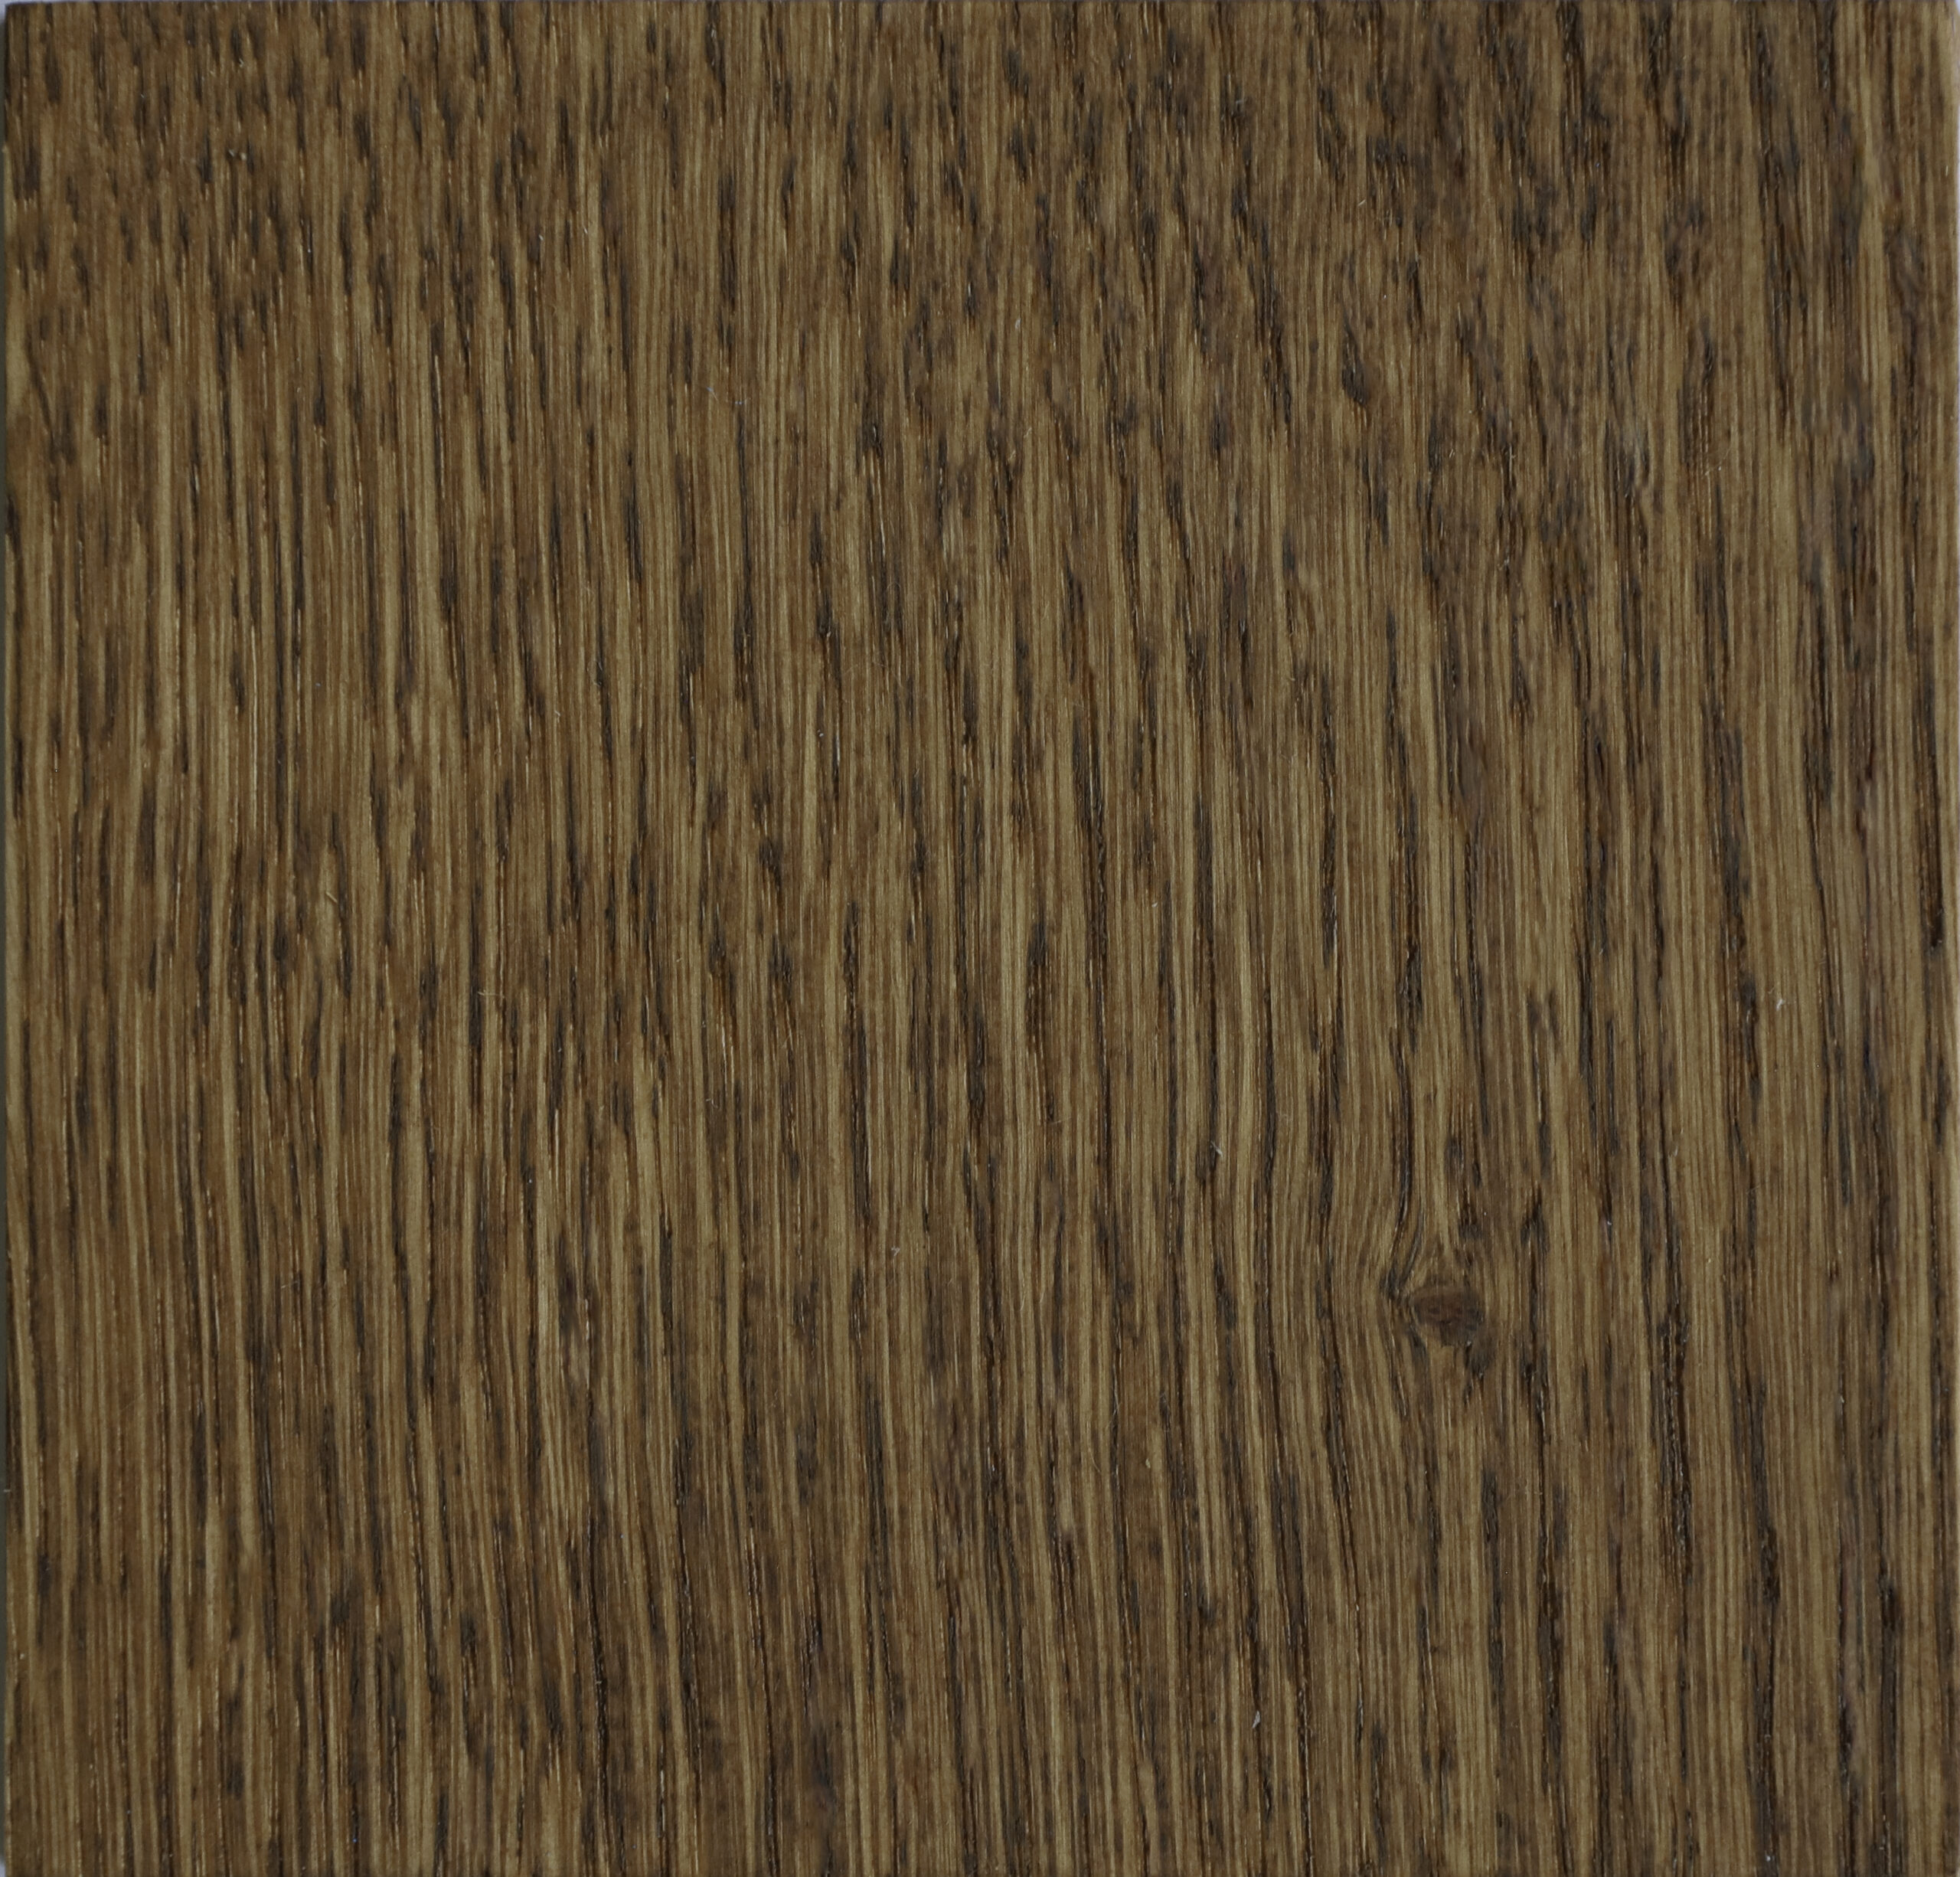 kleurstaal hazelnut de houtfabriek houten vloeren sample